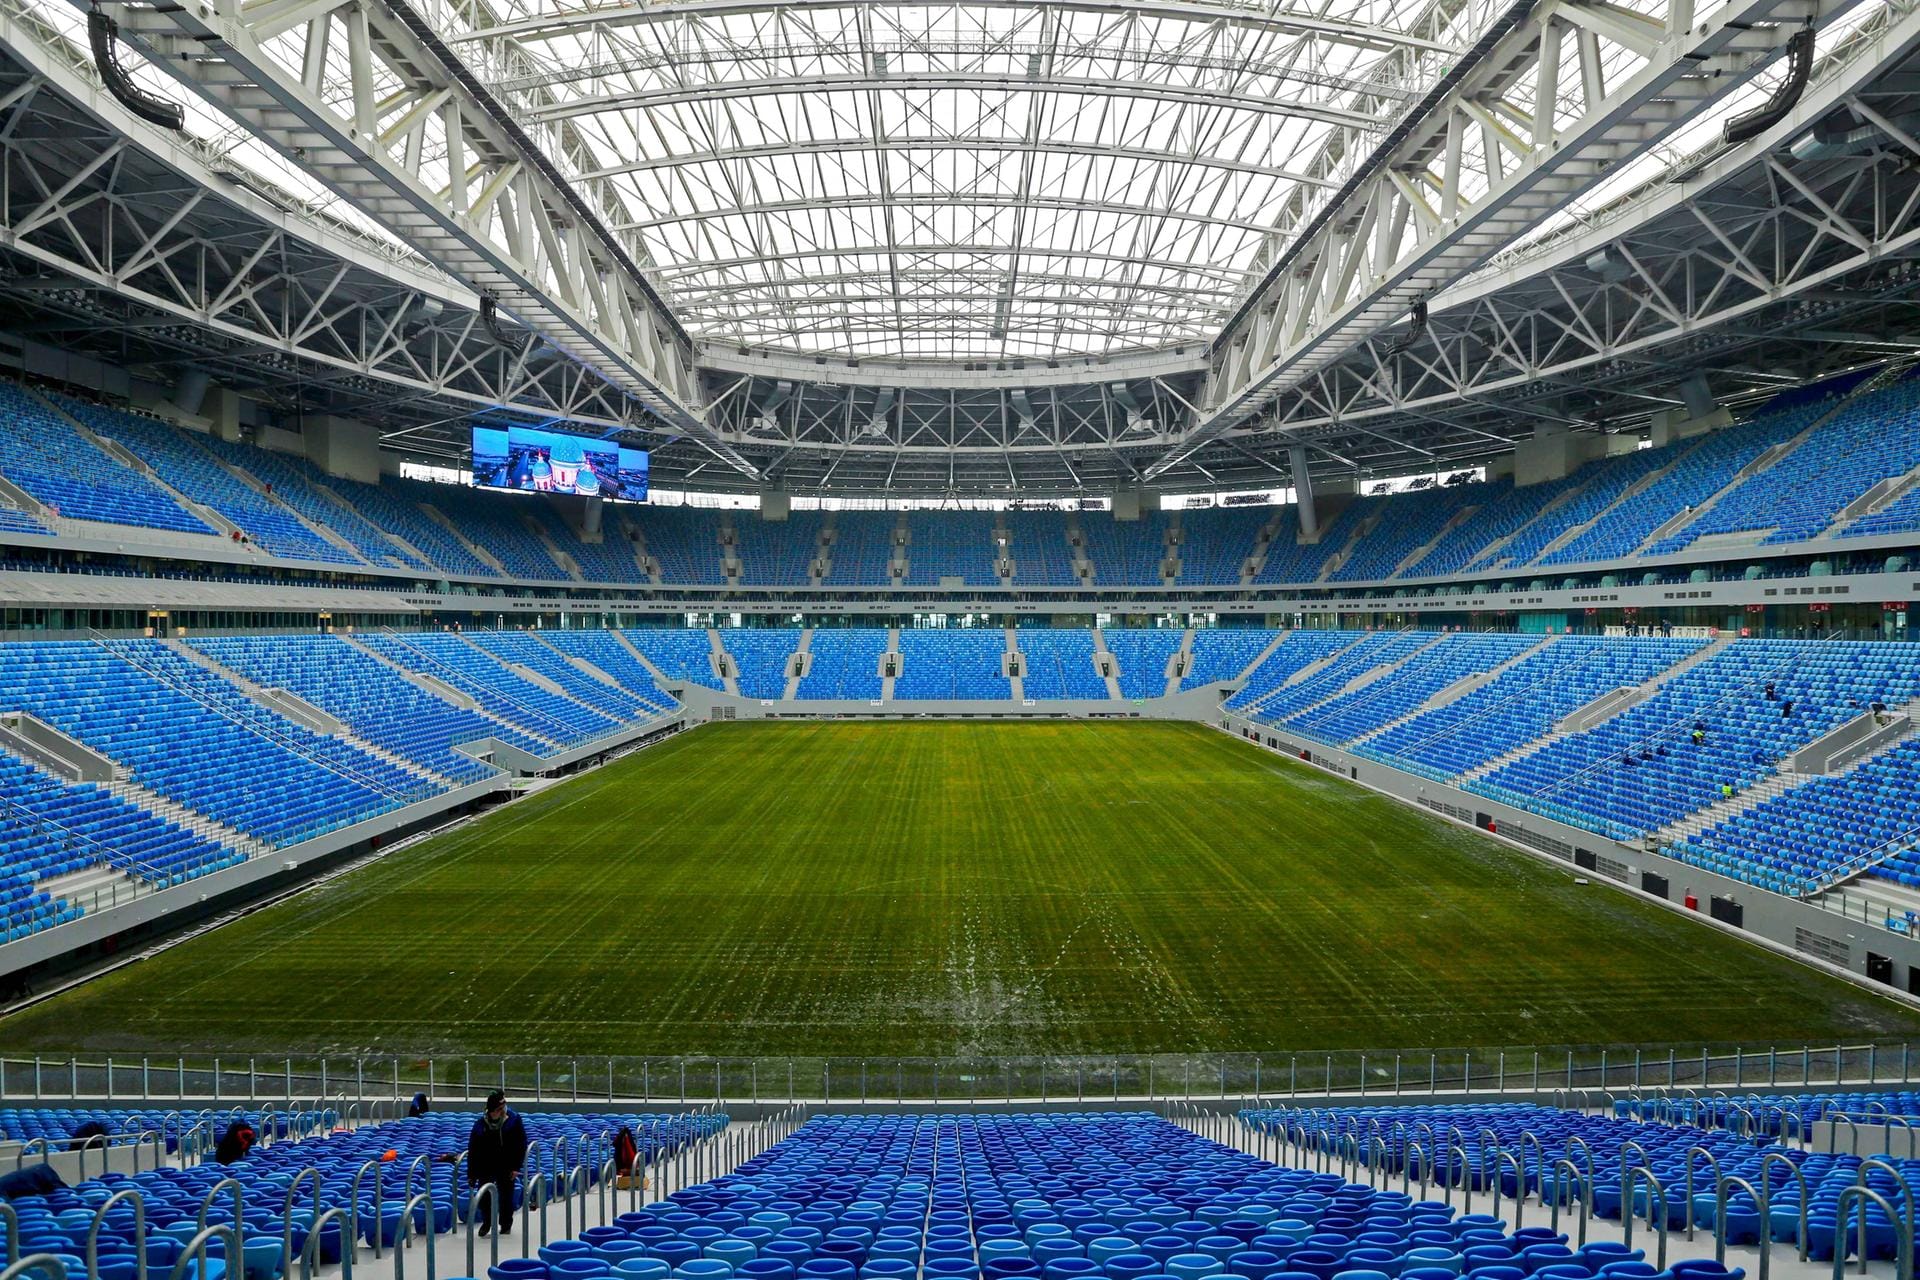 Sankt-Petersburg-Stadion: In der neuen Spielstätte finden insgesamt sieben Spiele statt – das Halbfinale und das Spiel um den 3. Platz bei der WM.